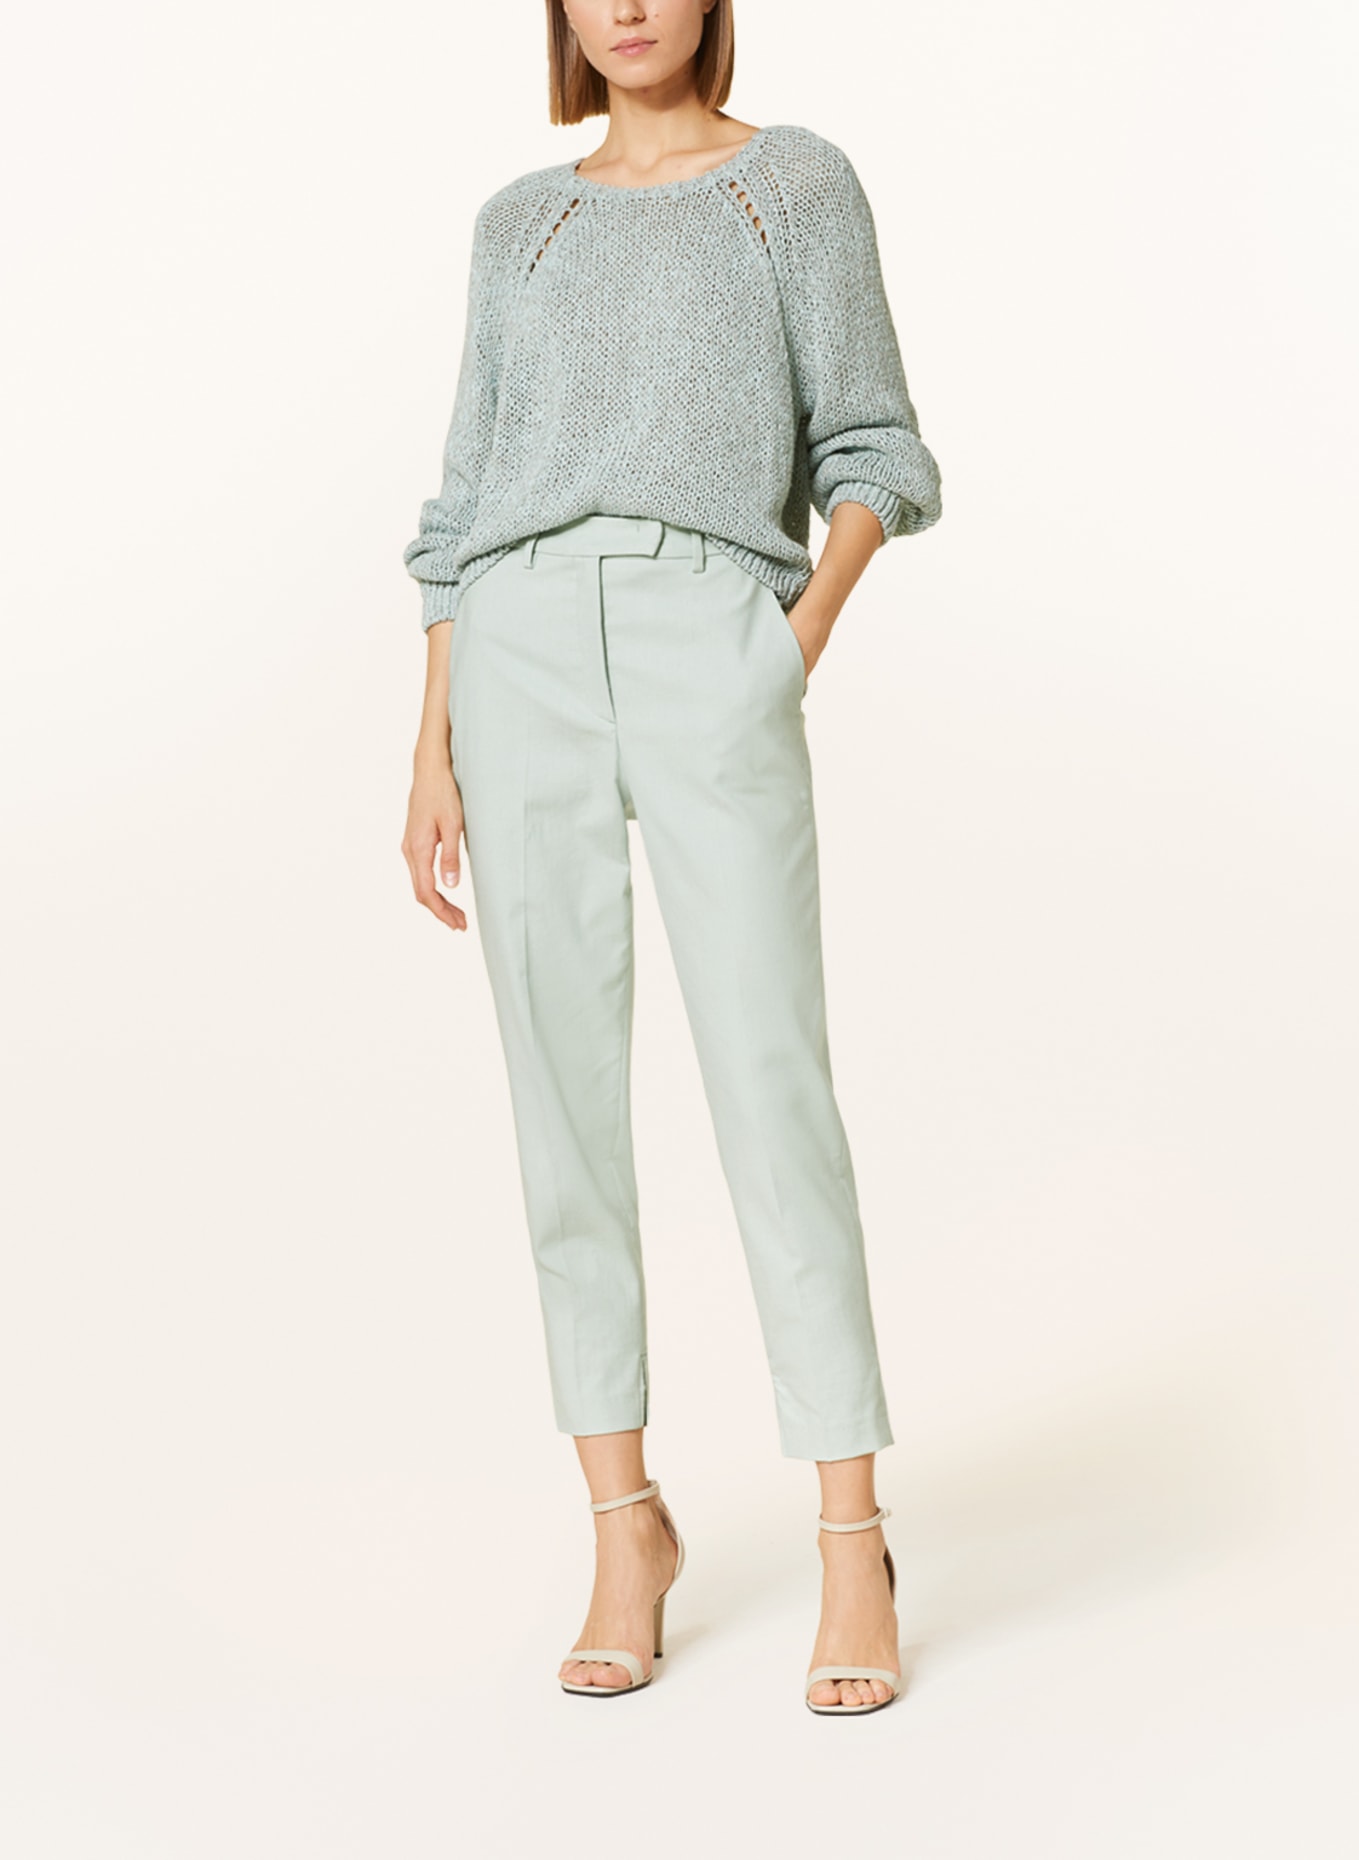 LUISA CERANO Pullover mit Leinen, Farbe: MINT (Bild 2)